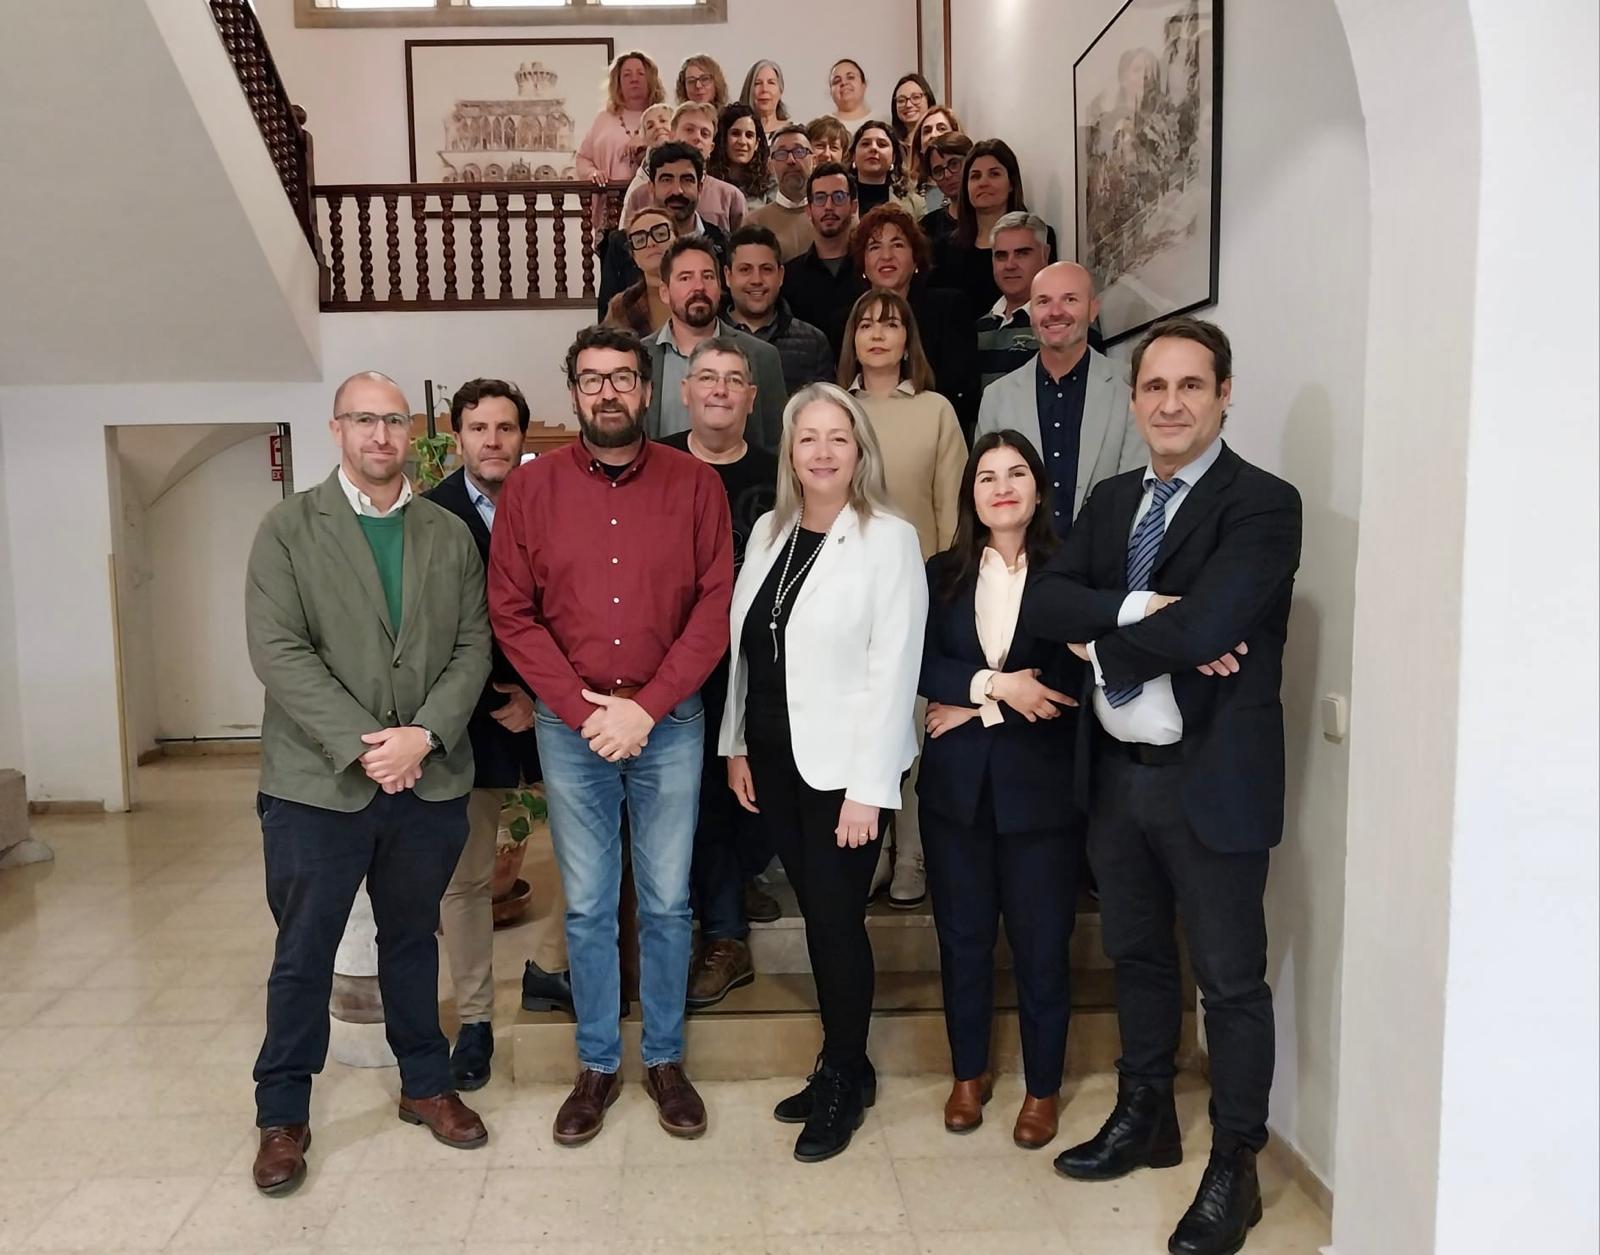 El Consell de Mallorca reúne a una treintena de regidores de ayuntamientos de la isla para establecer planes estratégicos para el fomento de la actividad económica y comercial